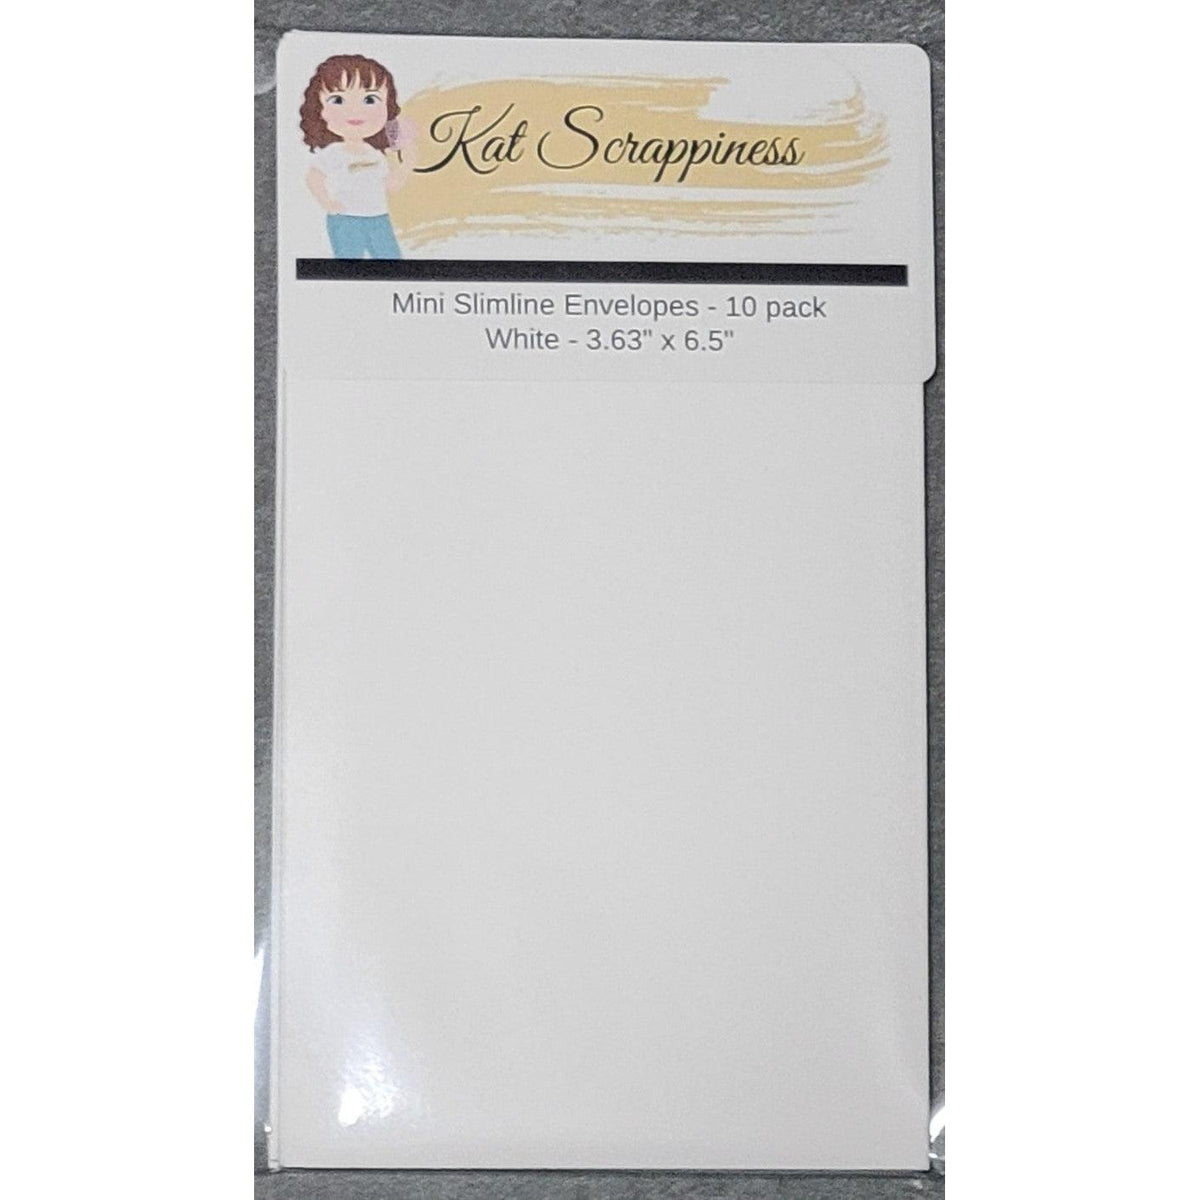 Mini Slimline Envelopes - White 10 pack